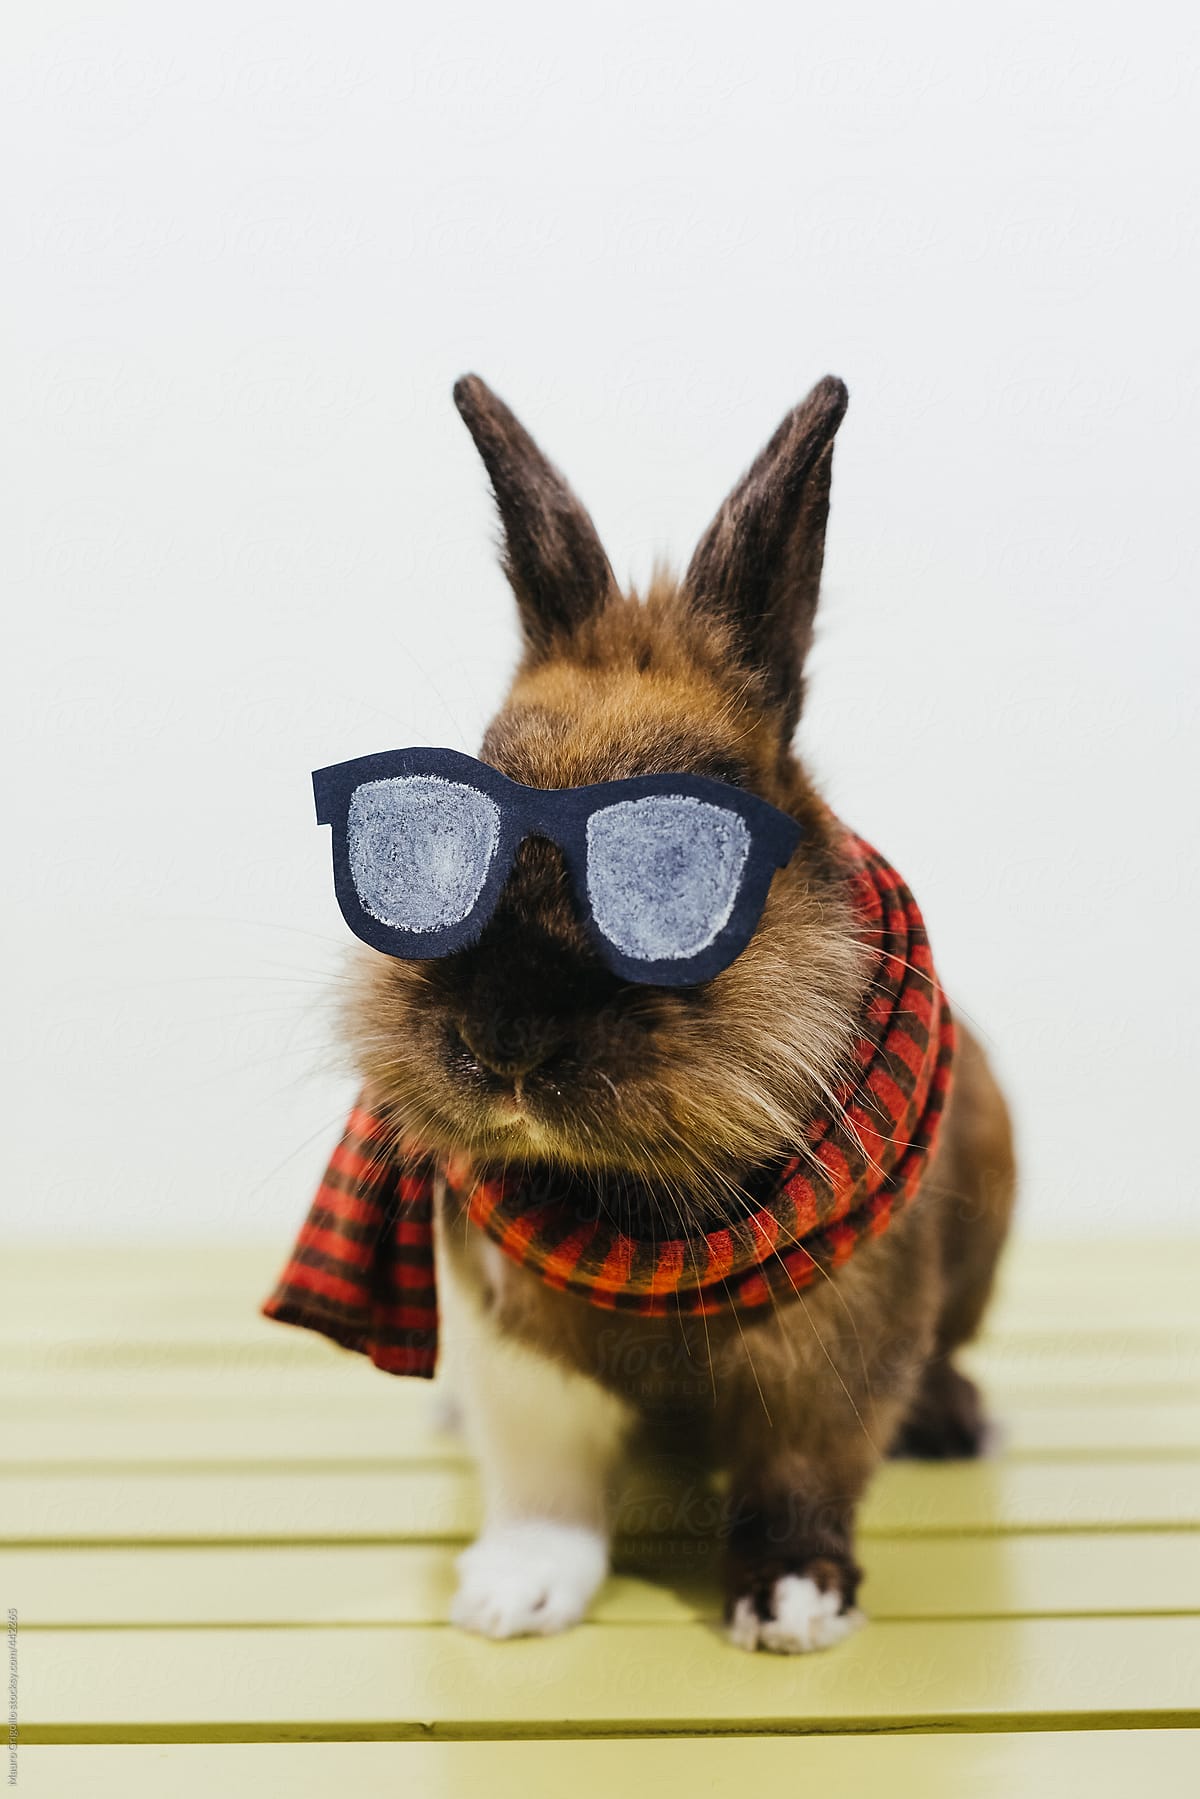 Beautiful and stylish hipster rabbit